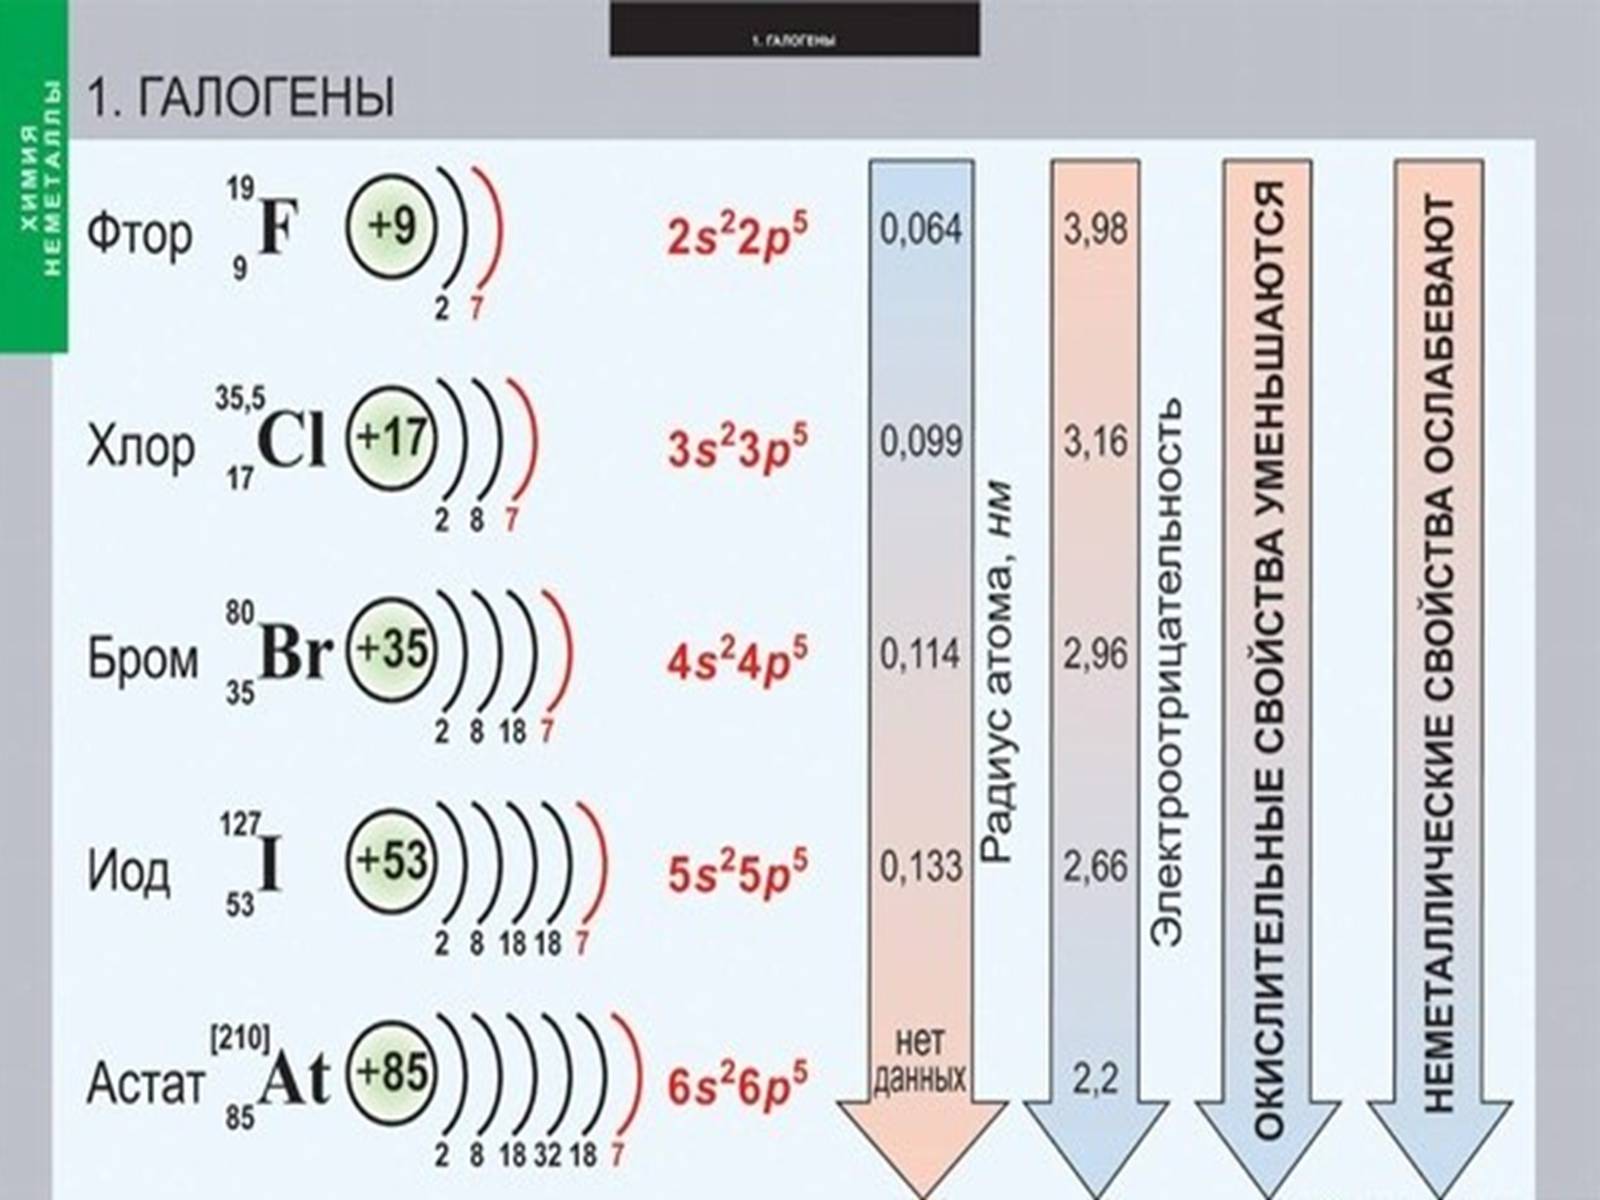 Бром йод астат. Формула фтор строение электронных оболочек. Составьте схему электронного строения атома брома. Галогены. Электронное строение галогенов.